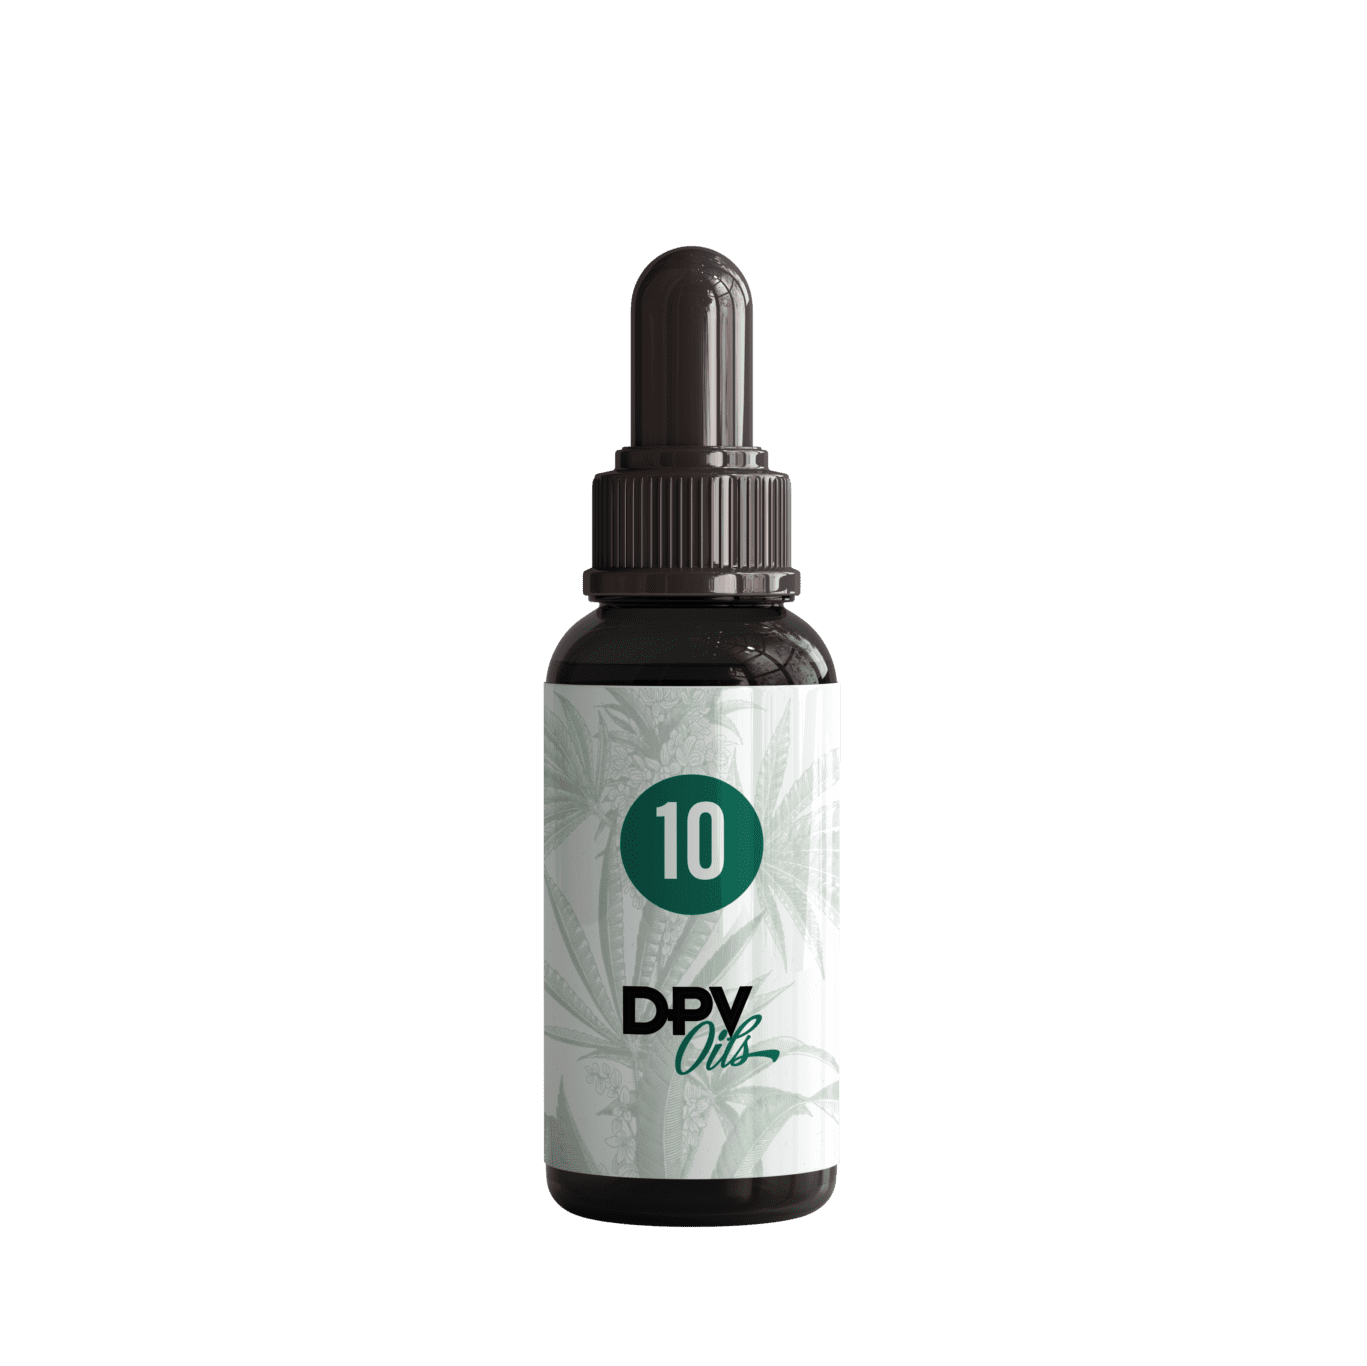 DPV 10 Oil